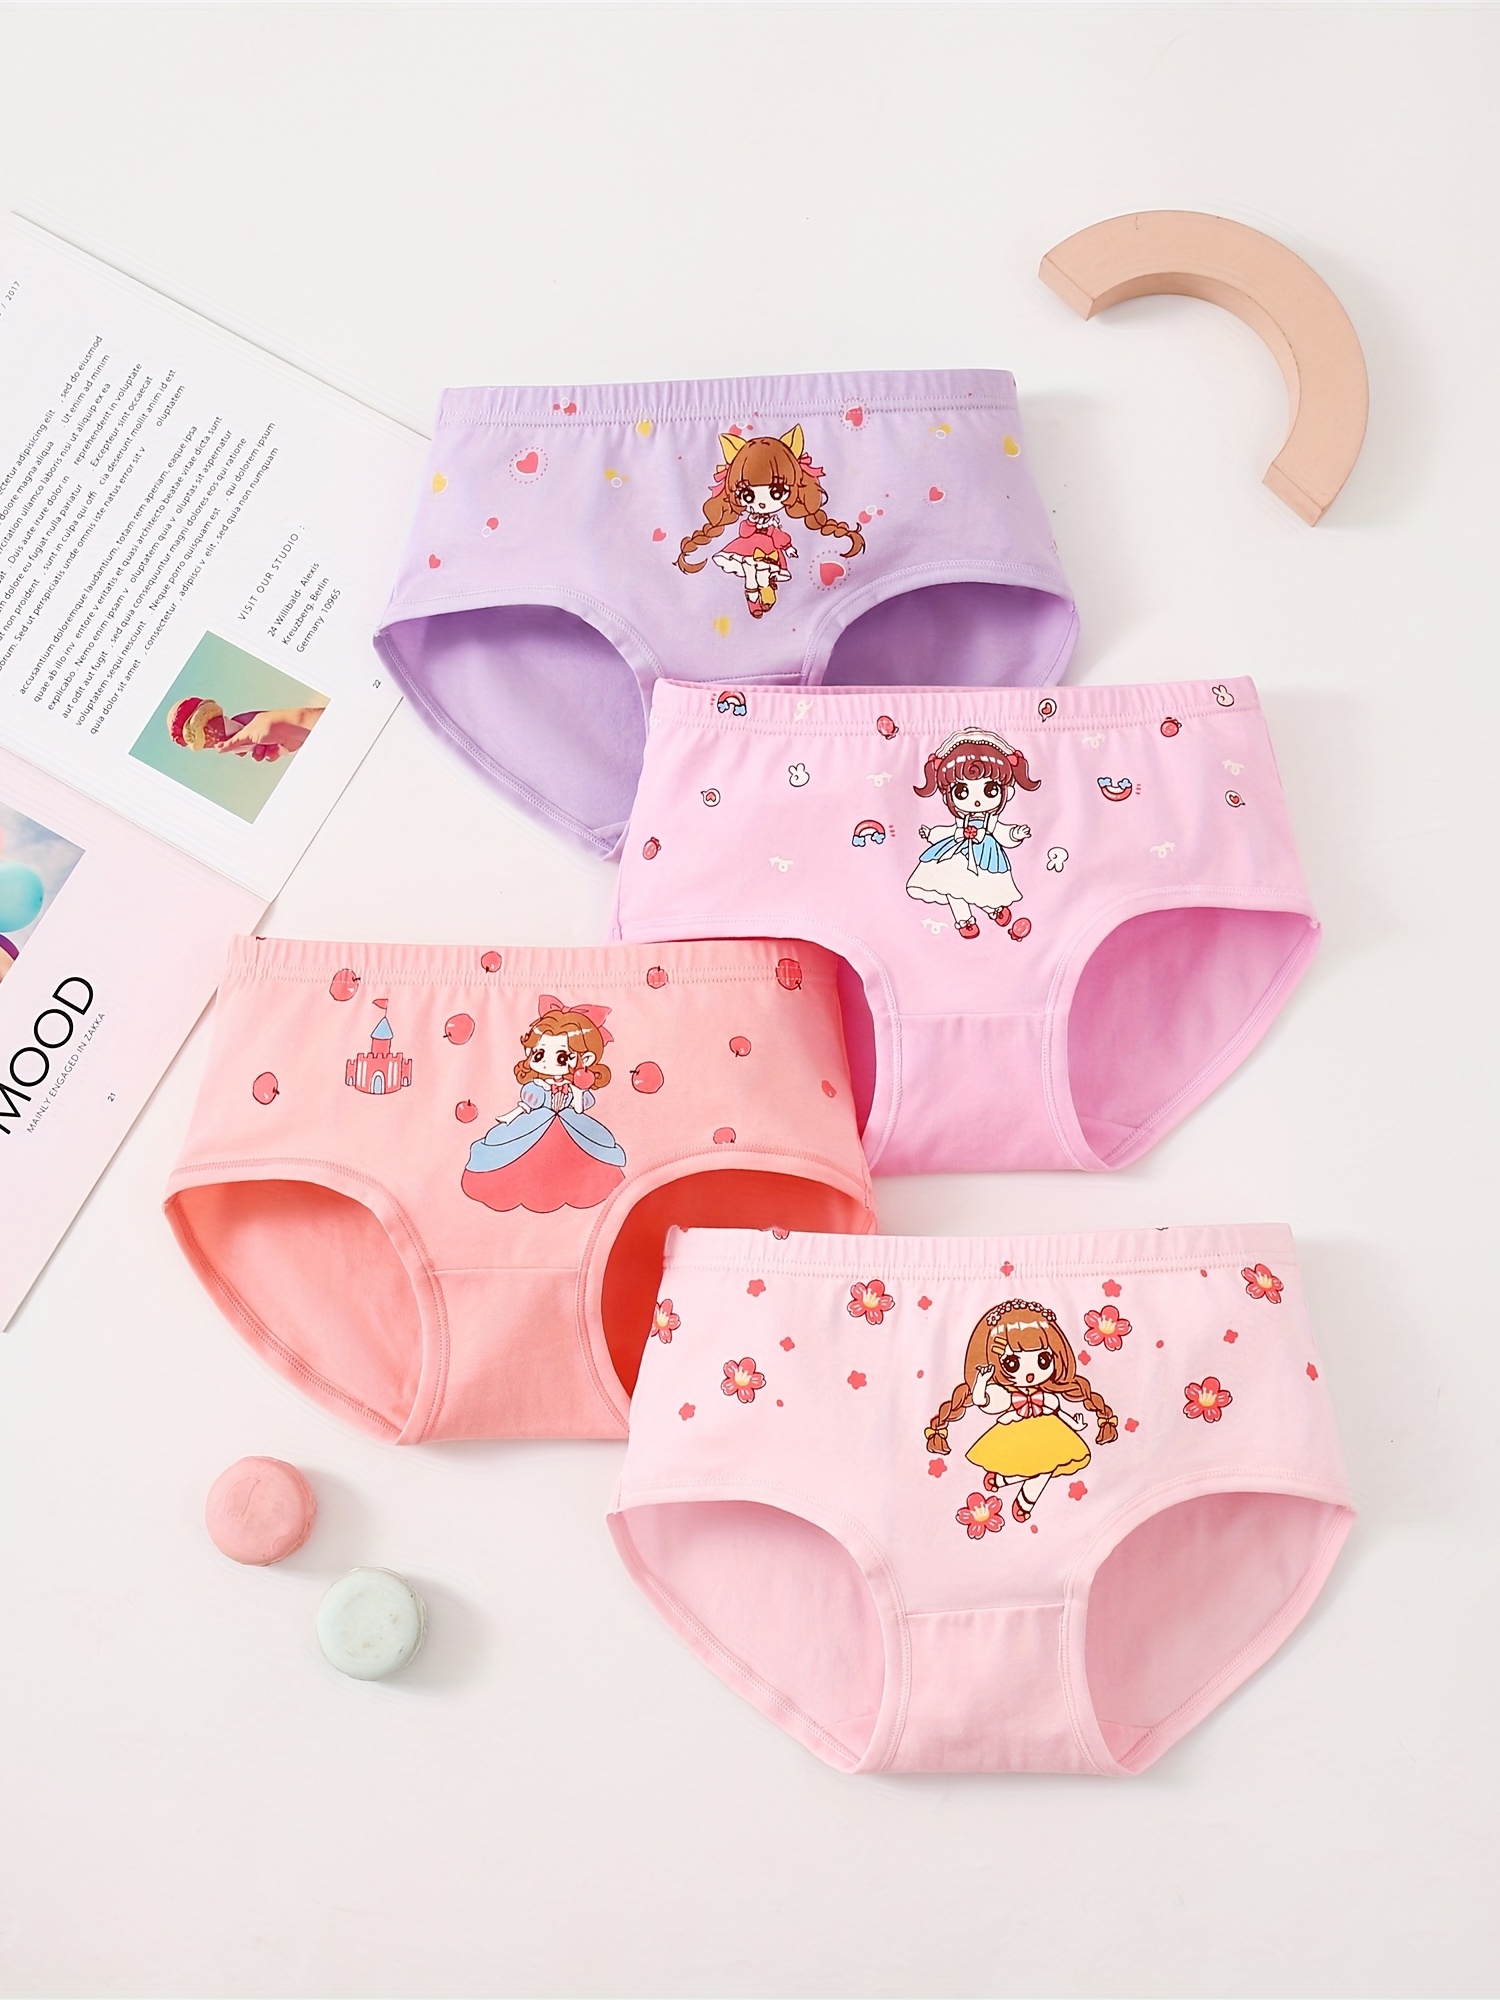 Toddler Underwear Kids Undies Girls Cotton Panties Size 6-7T(Pack of 6)